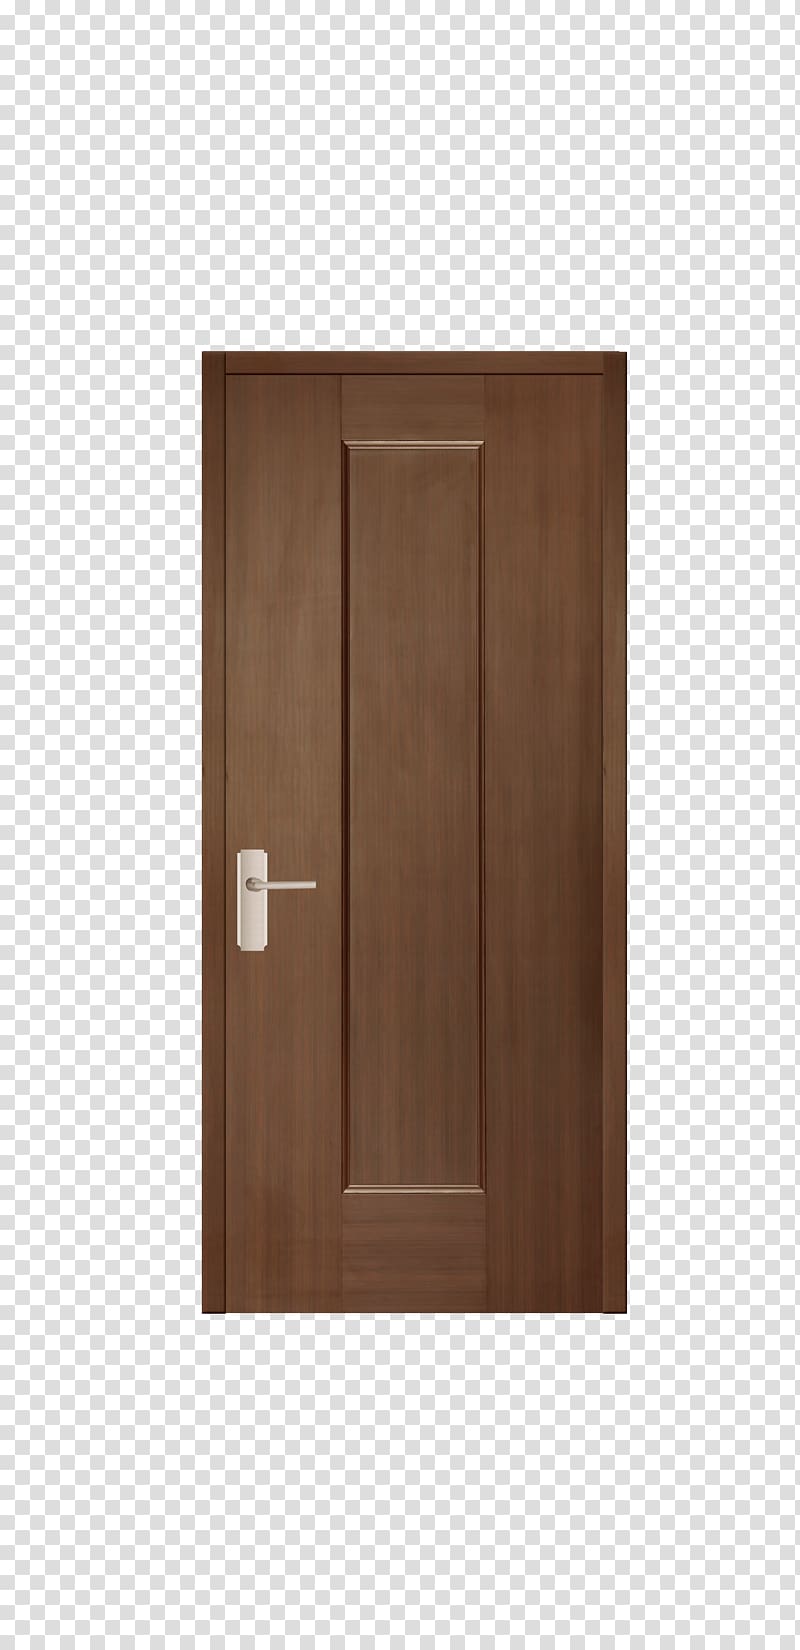 Hardwood Door Brown, door transparent background PNG clipart